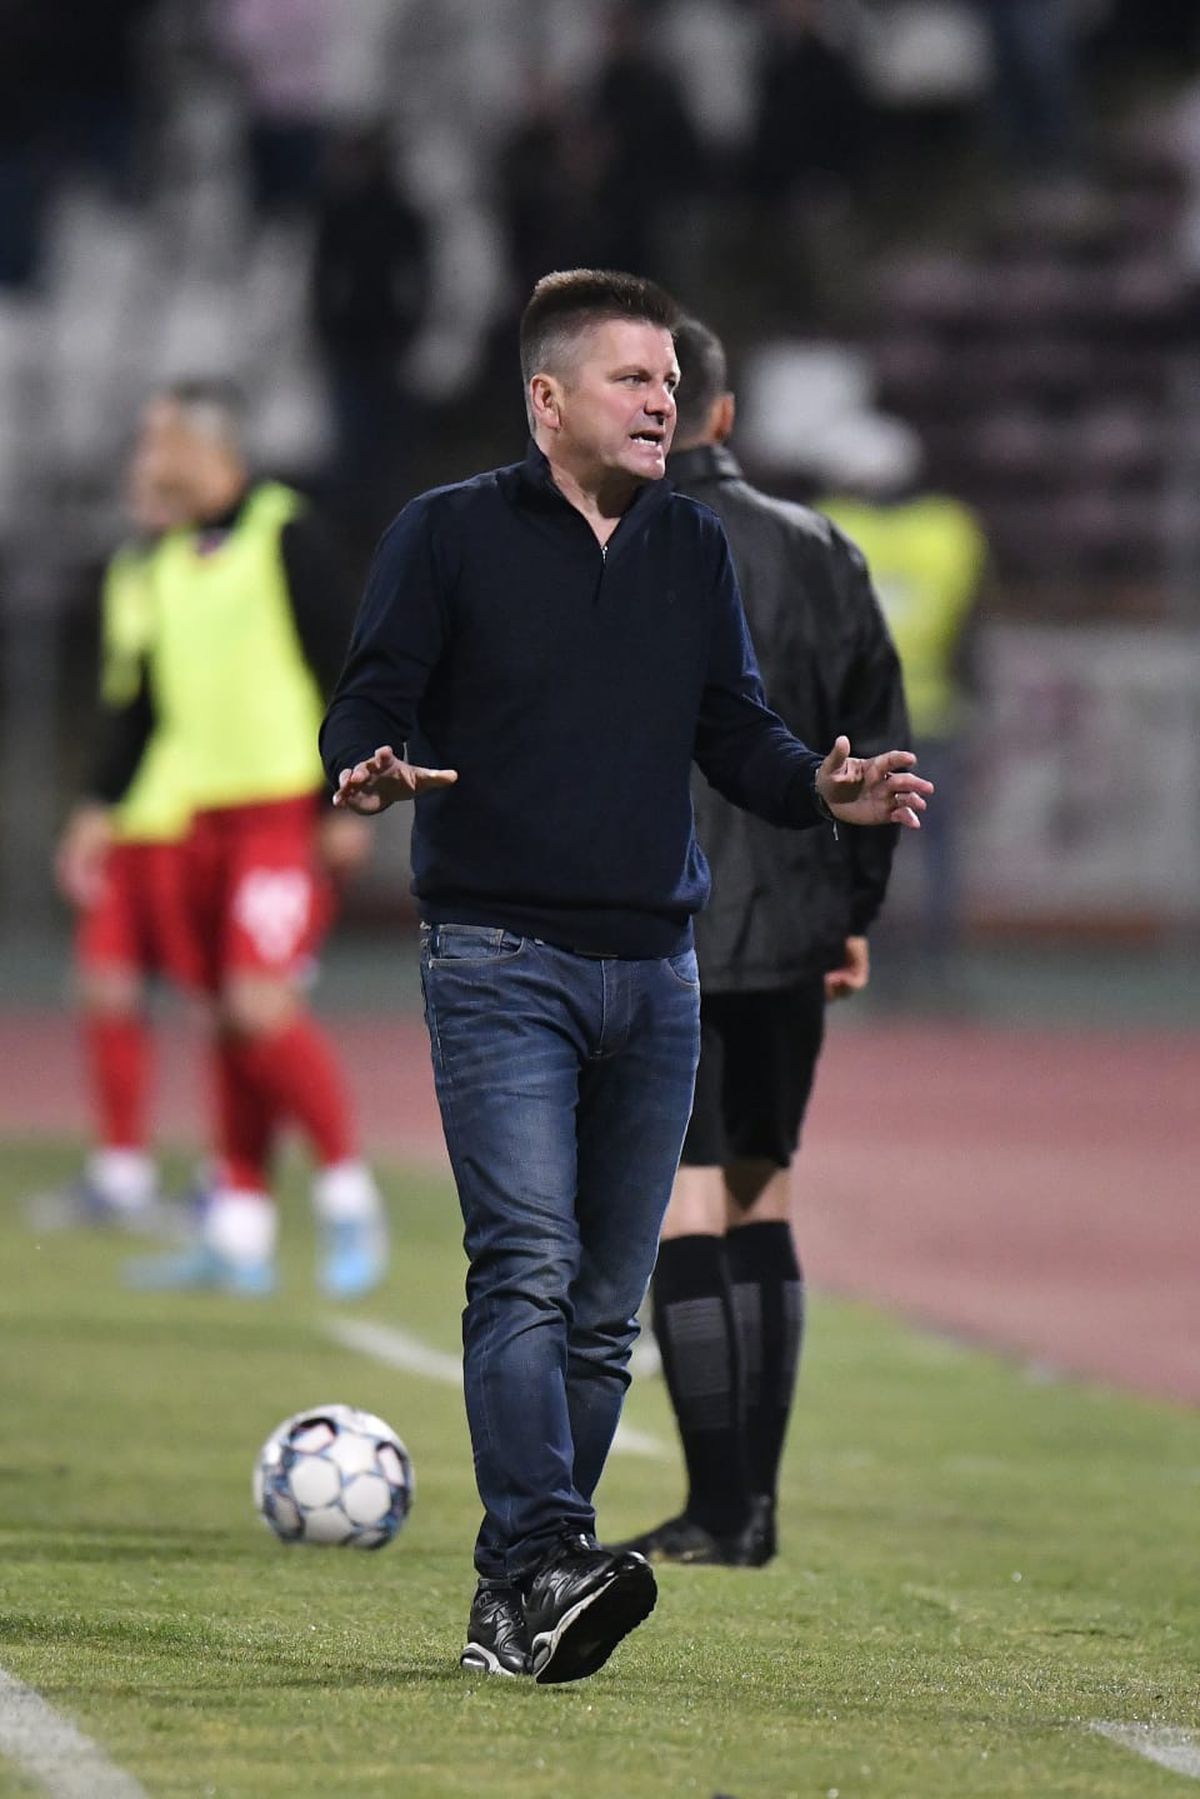 Detalii uluitoare din vestiarul „câinilor” » Aroganțe și relaxare înainte de Dinamo - U Cluj: „Le dăm 3-0 repede, simplu!” + Fotbaliștii îl ironizau pe Uhrin